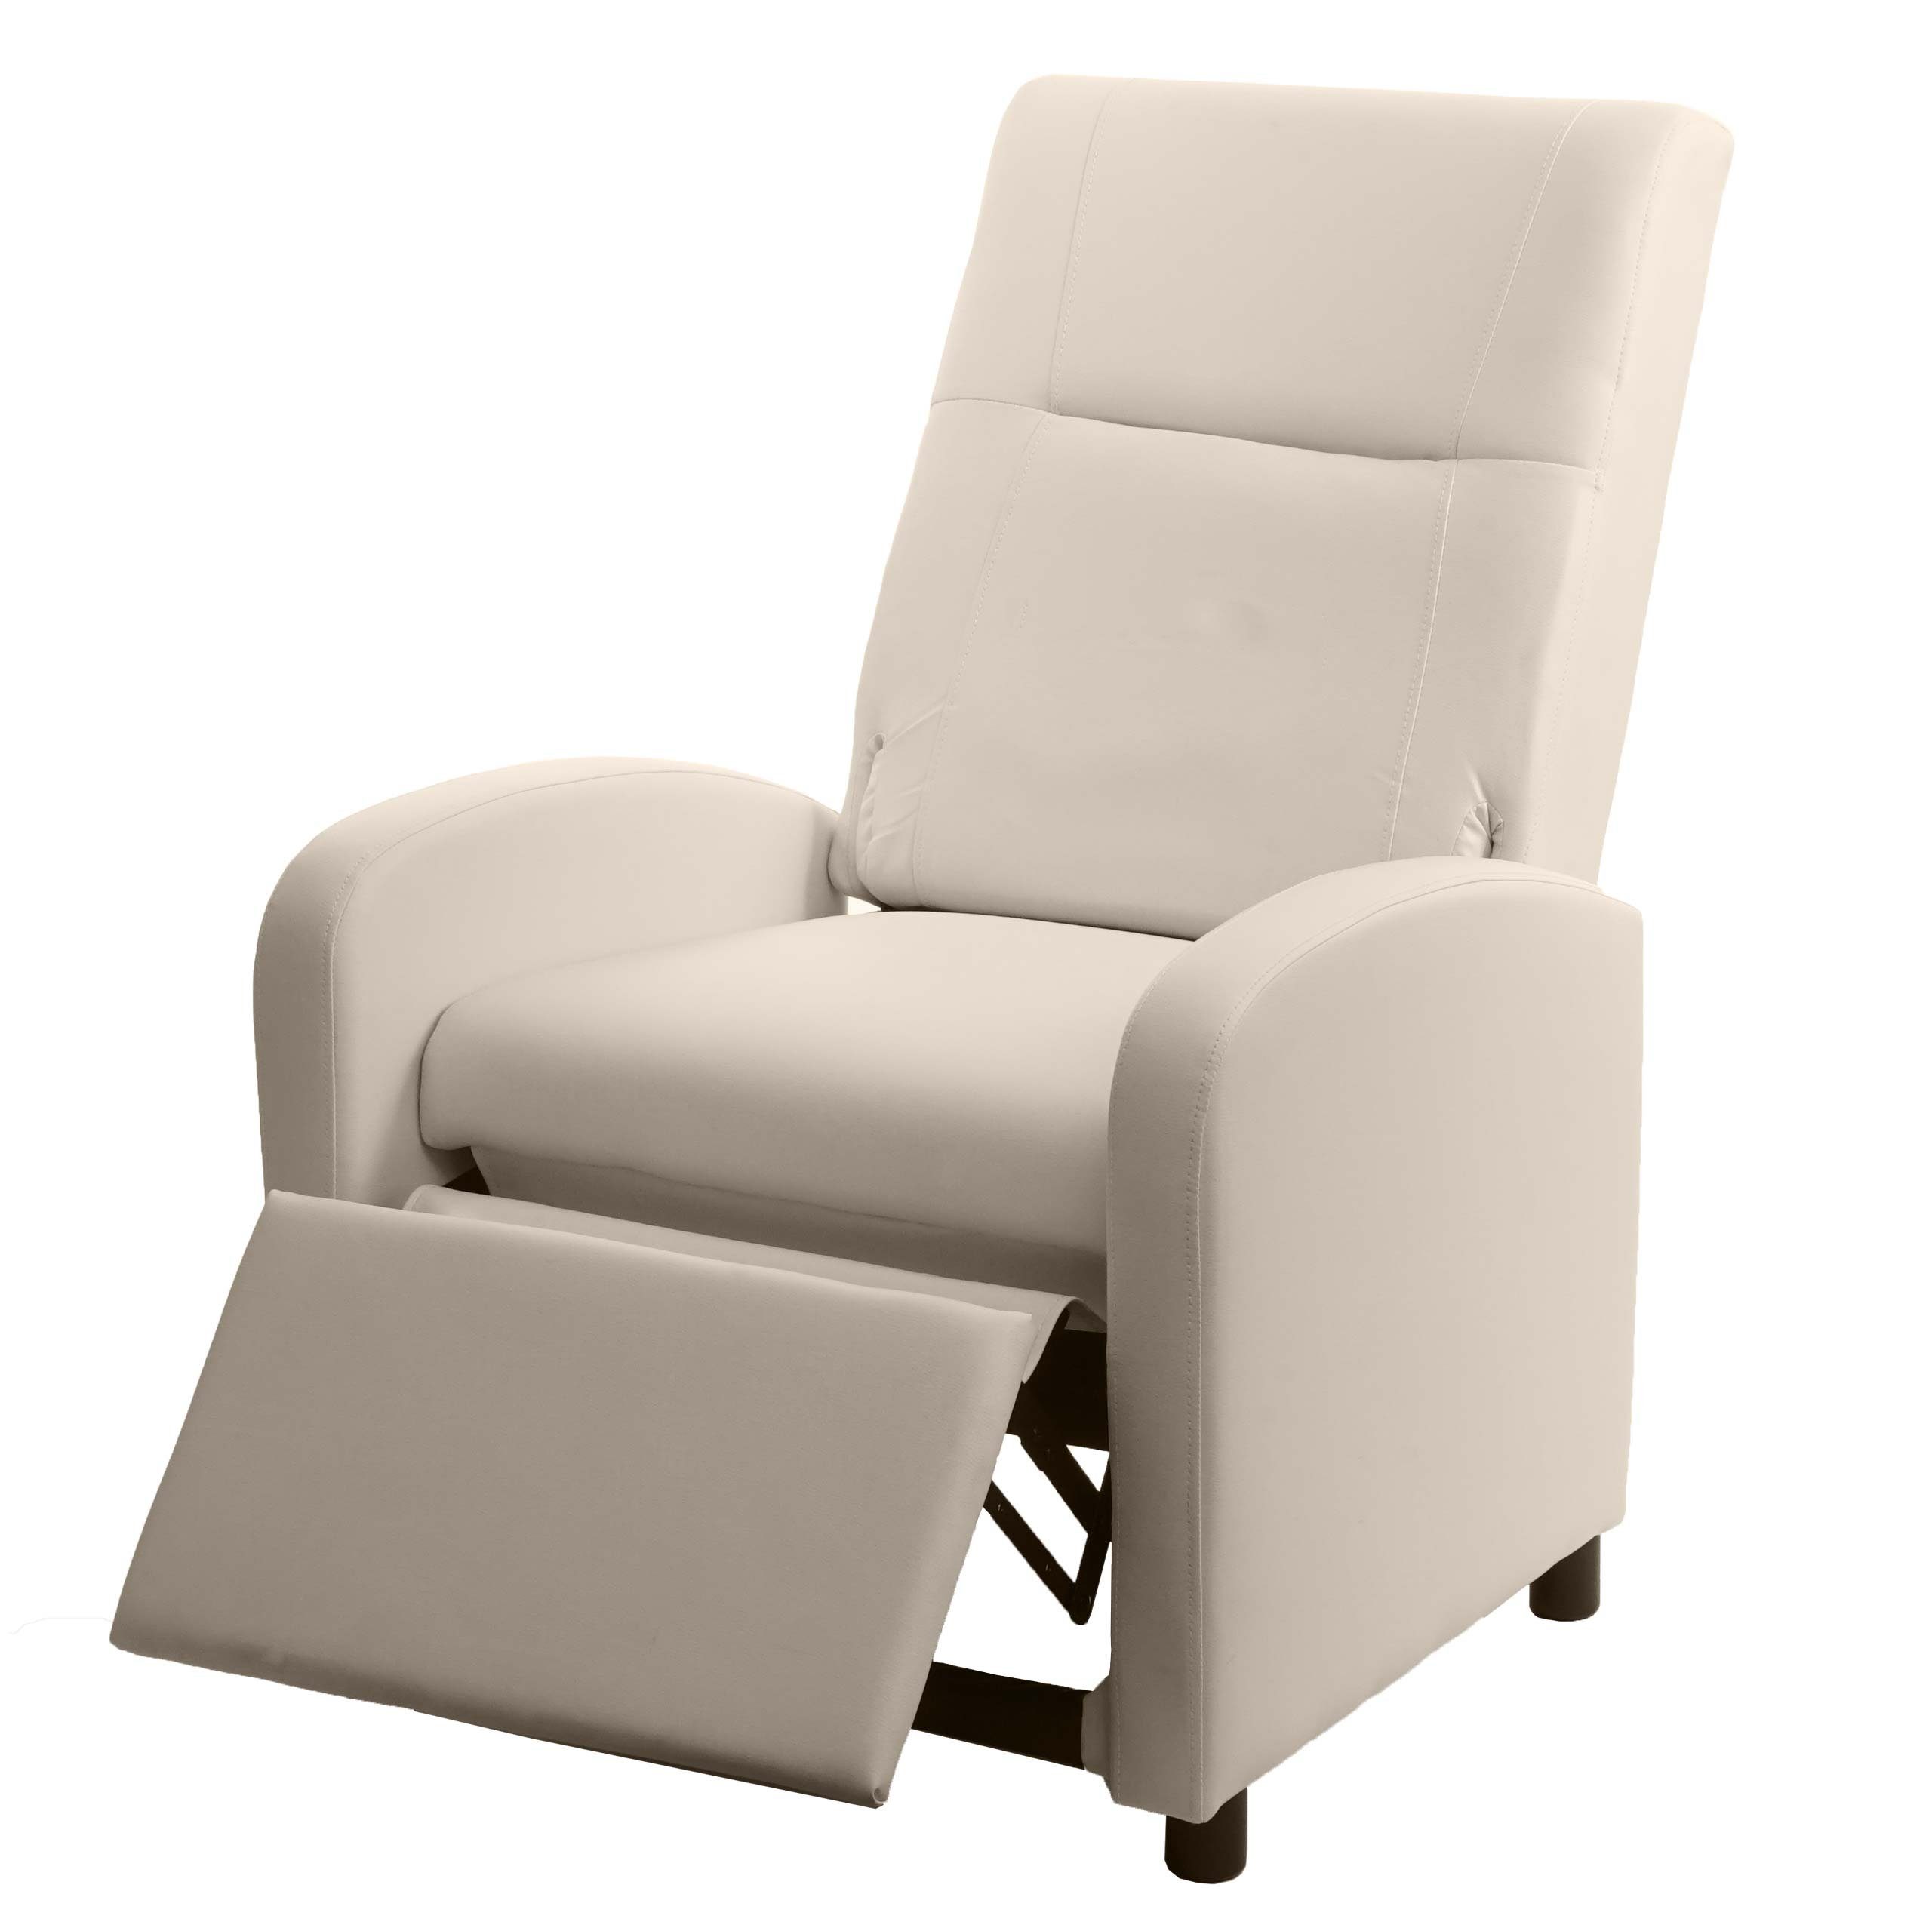 MCW TV-Sessel MCW-H18, Synchrone Klappbare und Synchrone der Verstellung der cream und Rücken- Rückenlehne Verstellung Rücken- Fußlehne, Fußlehne